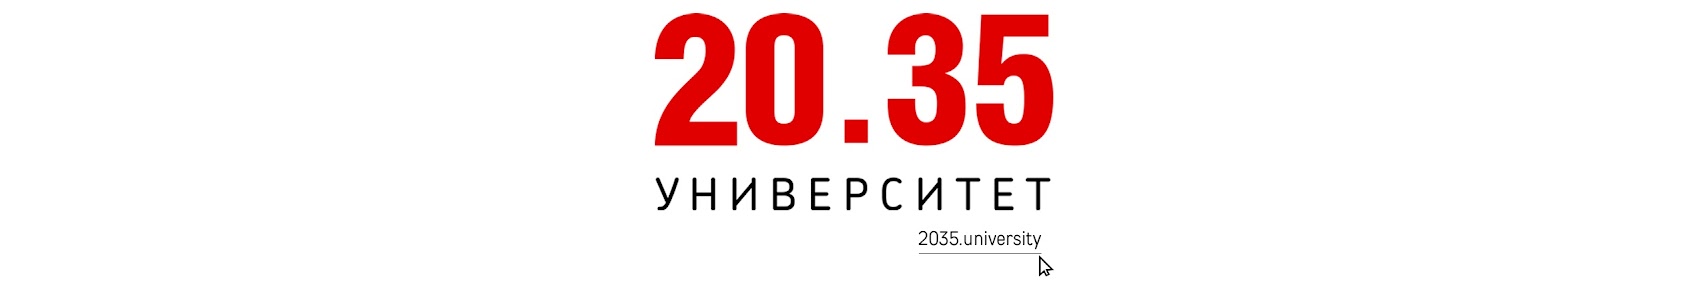 Сайте университета 2035. Институт 2035. Университет национальной технологической инициативы 2035. Университет 2035 логотип. НТИ 20.35 логотип.